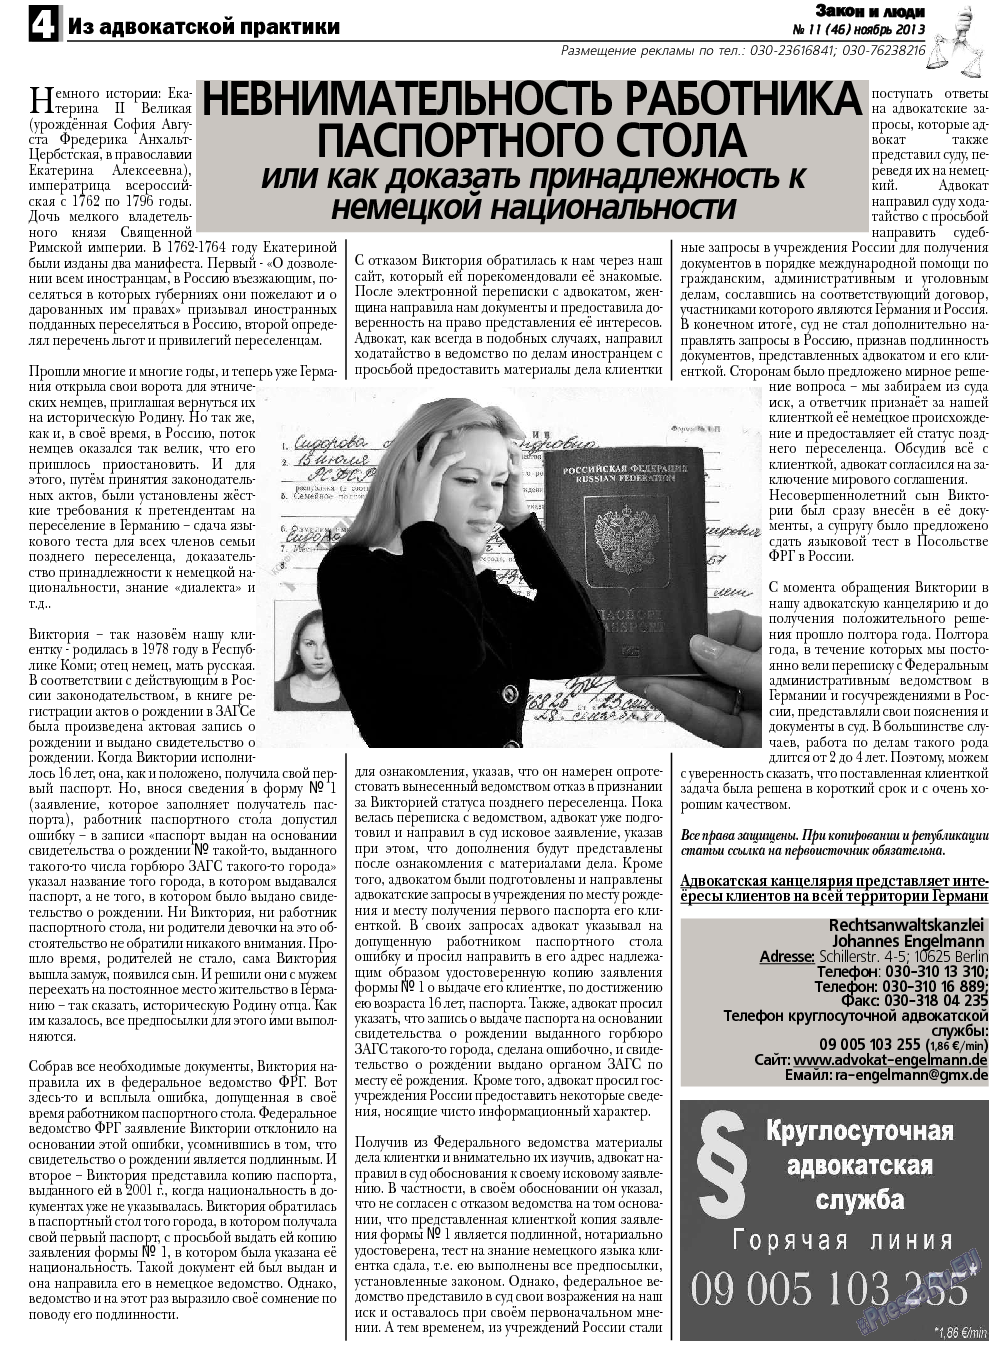 Закон и люди, газета. 2013 №11 стр.4